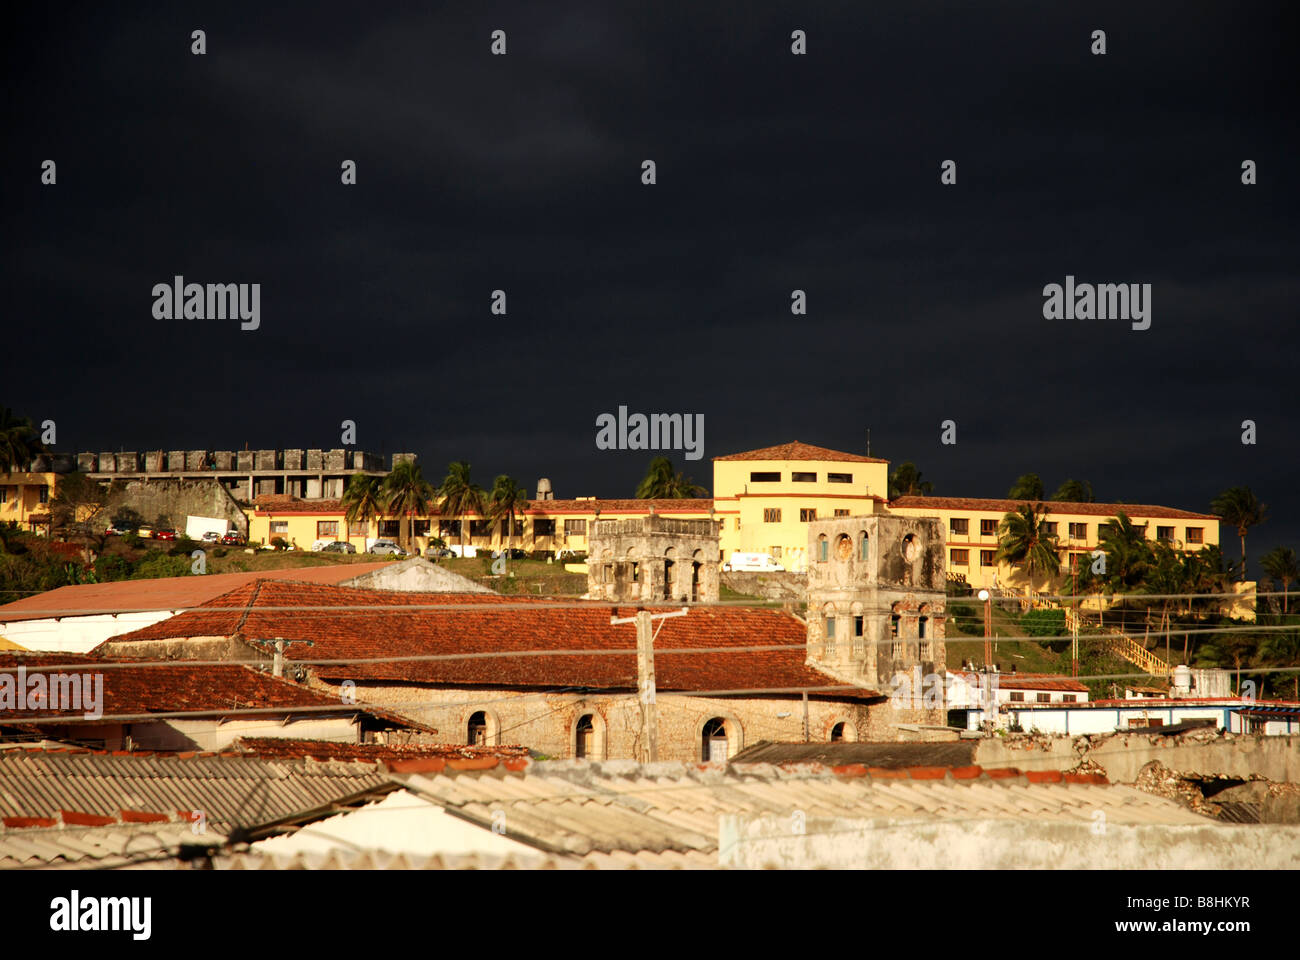 Hotel El Castillio und Stadt Baracoa mit Kathedrale Nuestra Senora de Las Ascuncion Provinz Guantanamo Kuba Stockfoto